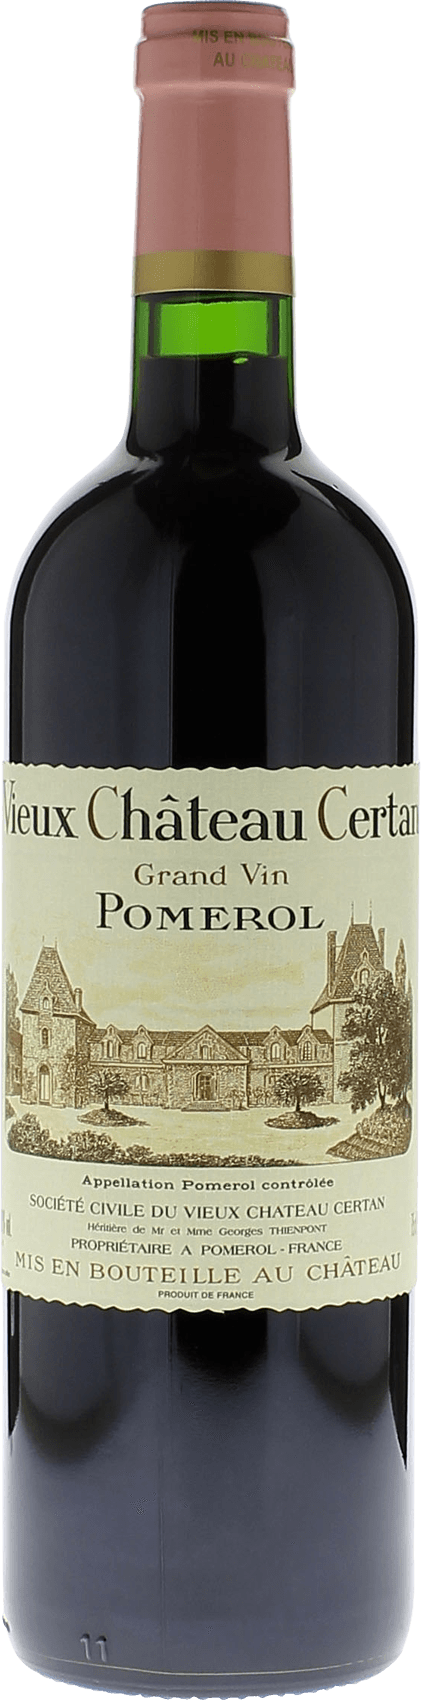 Vieux chteau  certan 1990  Pomerol, Bordeaux rouge